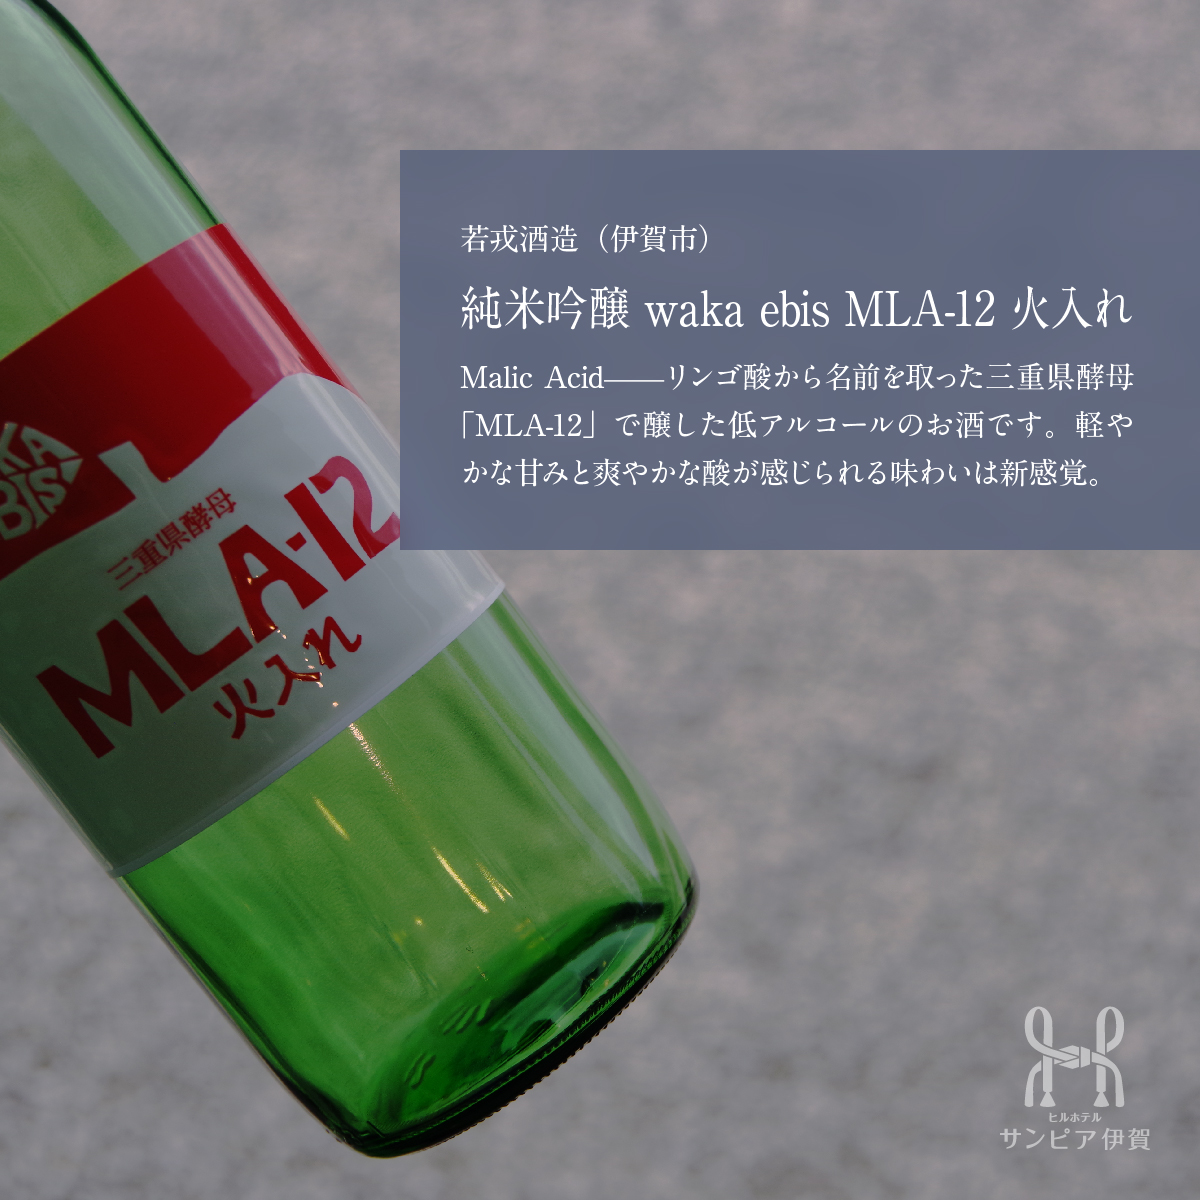 お酒の紹介（6）。若戎酒造（伊賀市）「純米吟醸 waka ebis MLA-12 火入れ」。Malic Acid—リンゴ酸から名前を取った三重県酵母「MLA-12」で醸した低アルコールのお酒です。軽やかな甘みと爽やかな酸が感じられる味わいは新感覚。